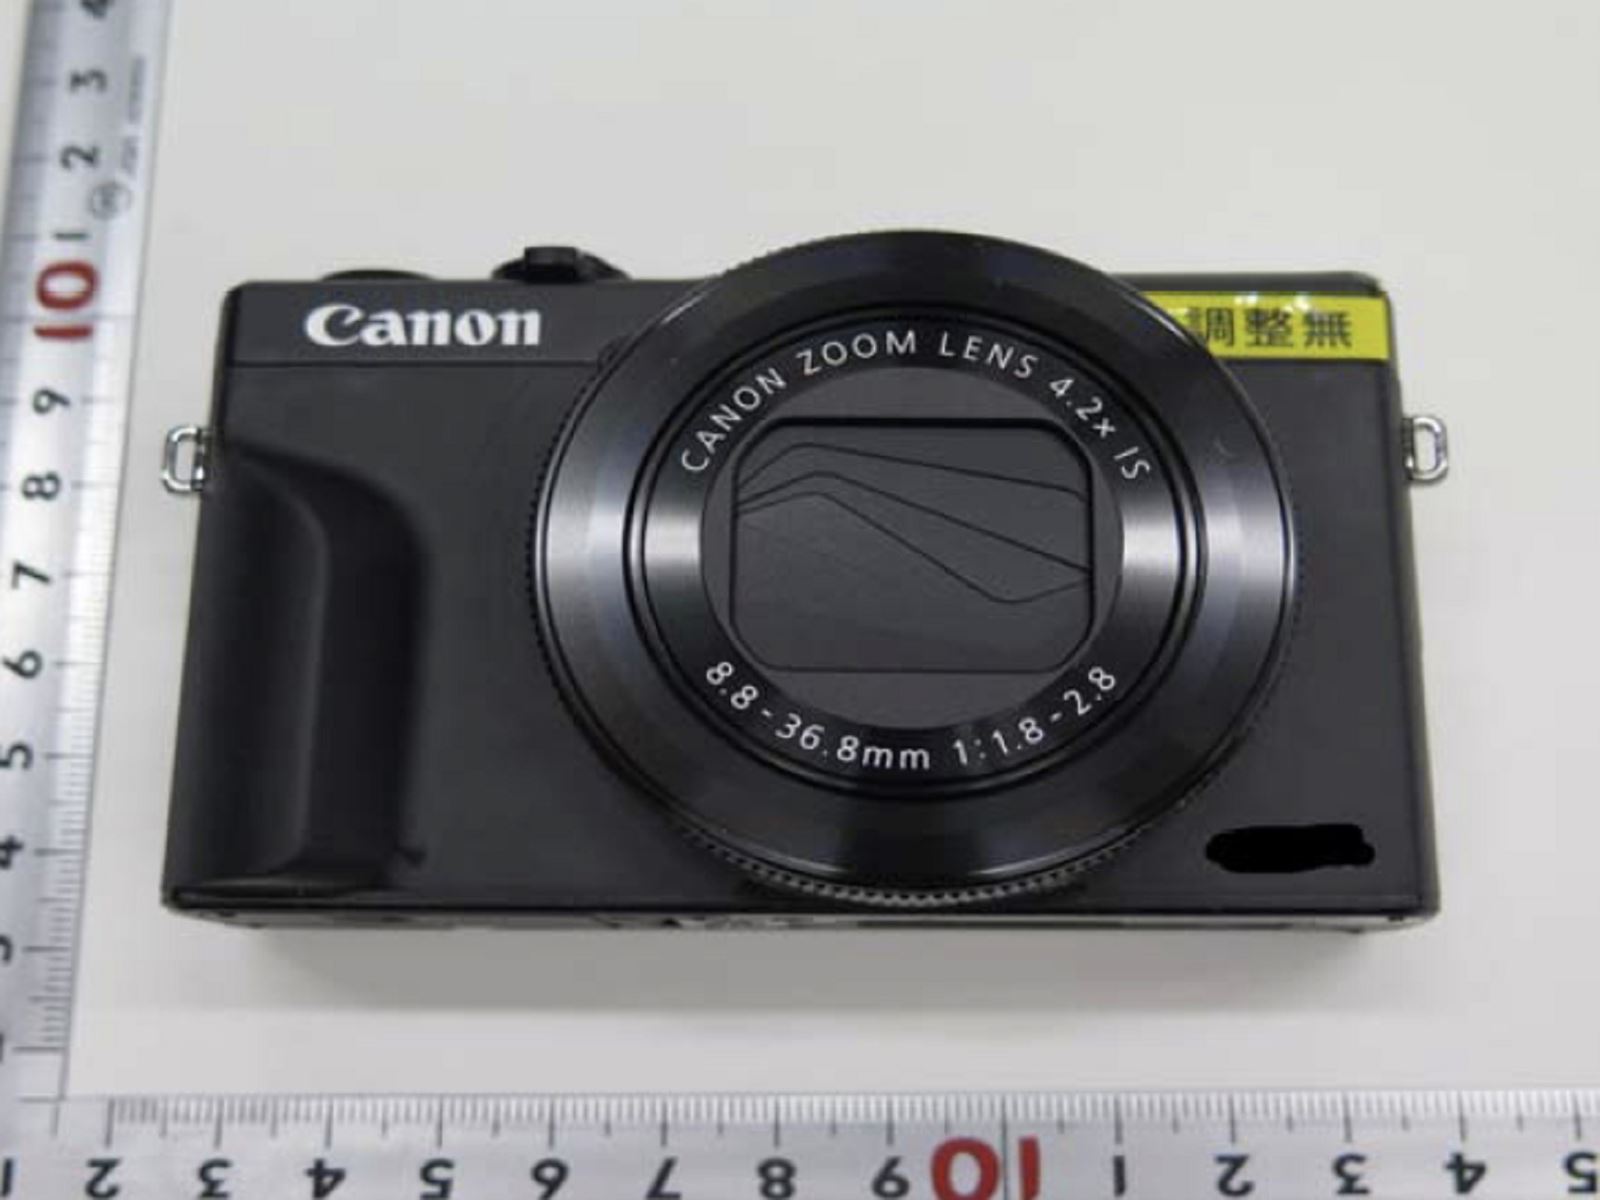 Rò rỉ hình ảnh đầu tiên của máy ảnh tin đồn Canon PowerShot G7X Mark III